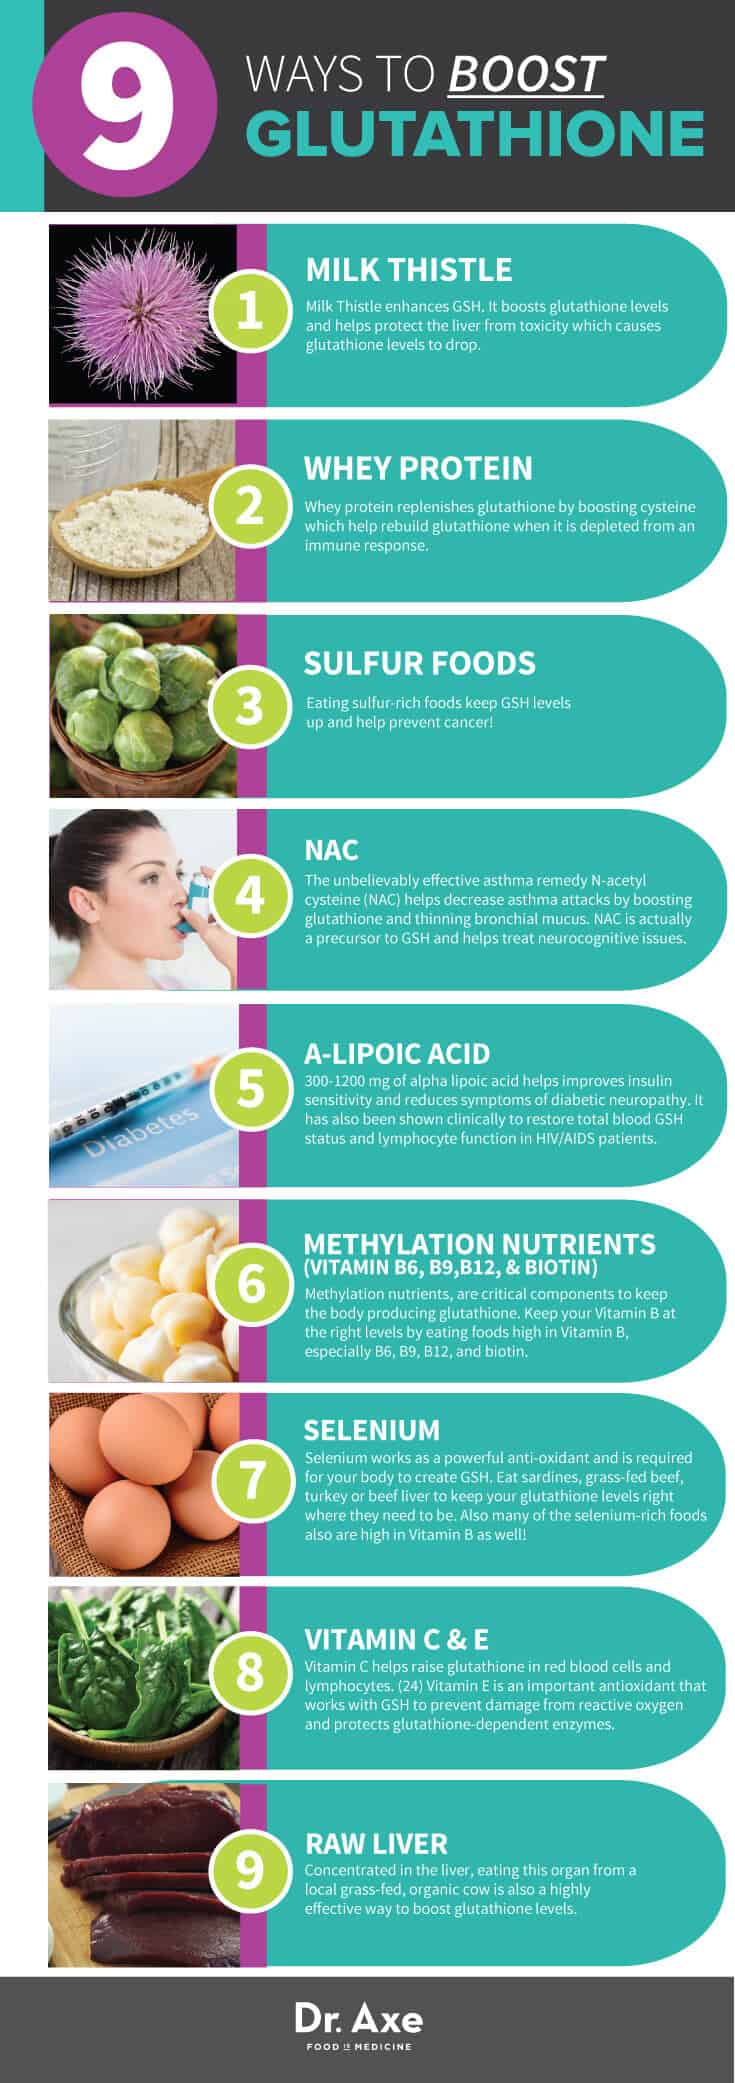 Ways to Boost Glutathione Infographic 